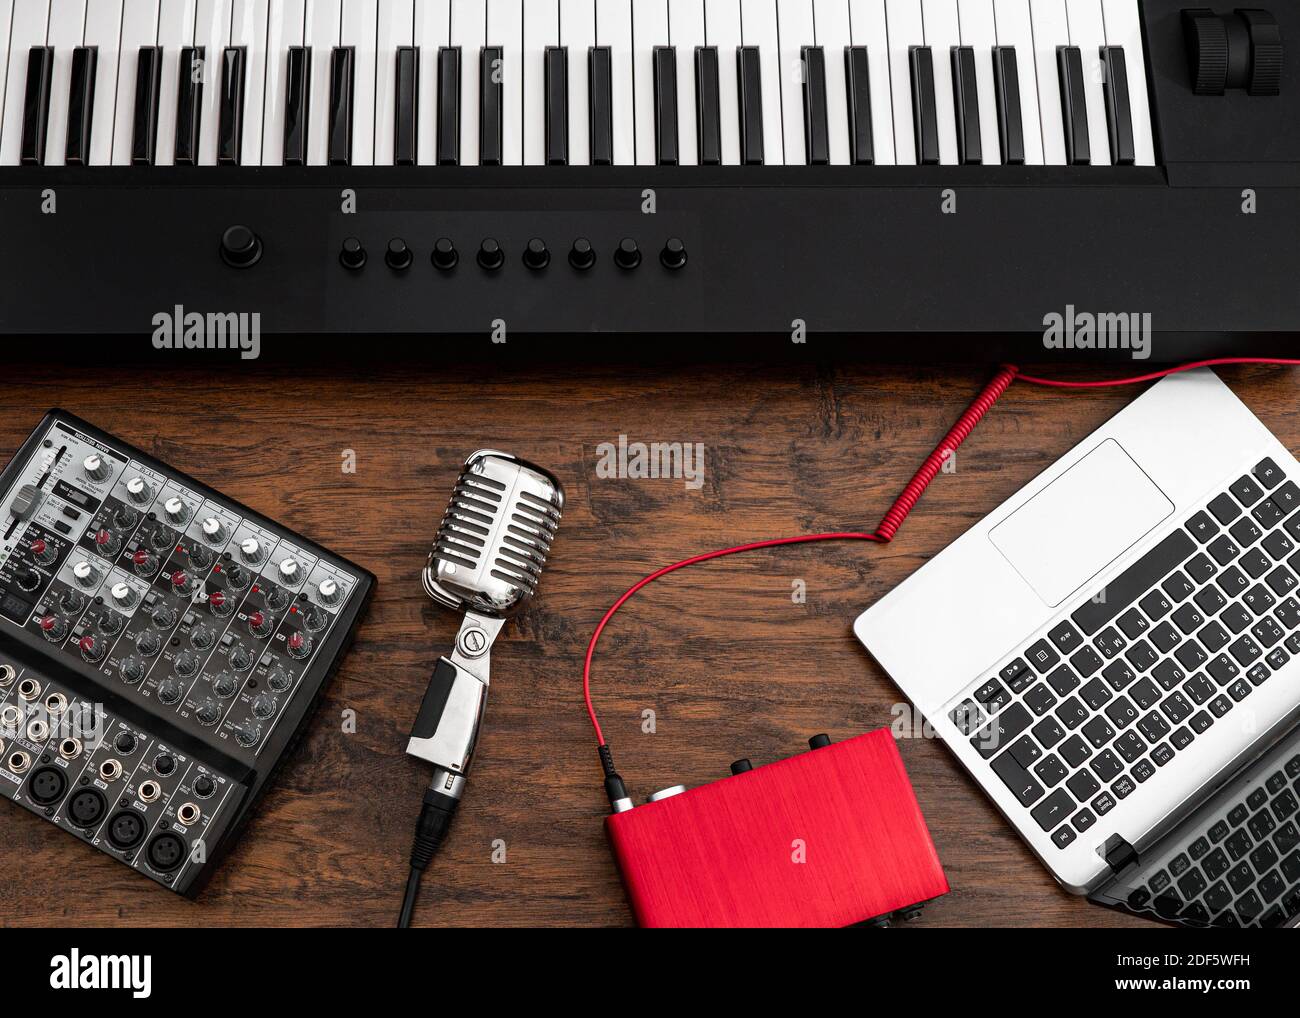 neus Onafhankelijk pastel Piano, laptop, microphone and sound card. Home record studio Stock Photo -  Alamy